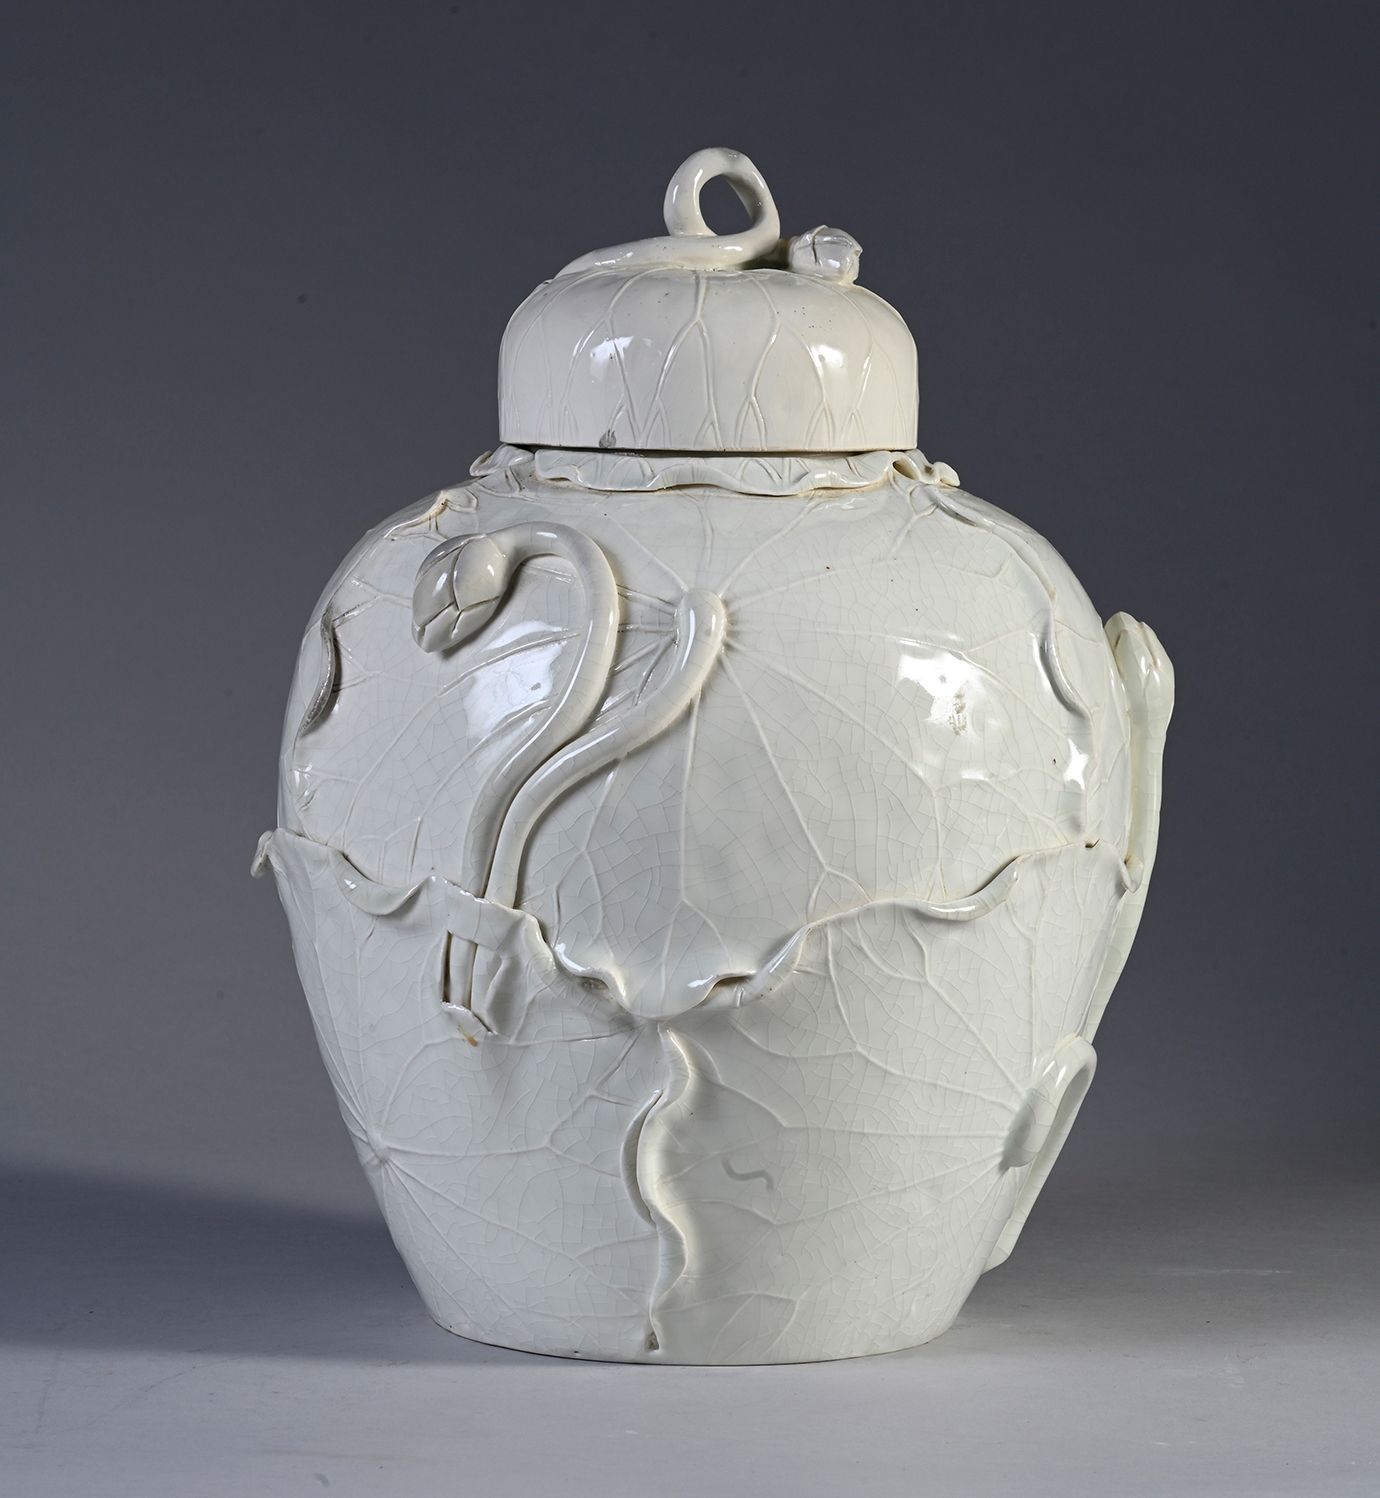 CHINE, XXe siècle Vaso coperto in terracotta bianca con decorazione naturalistic&hellip;